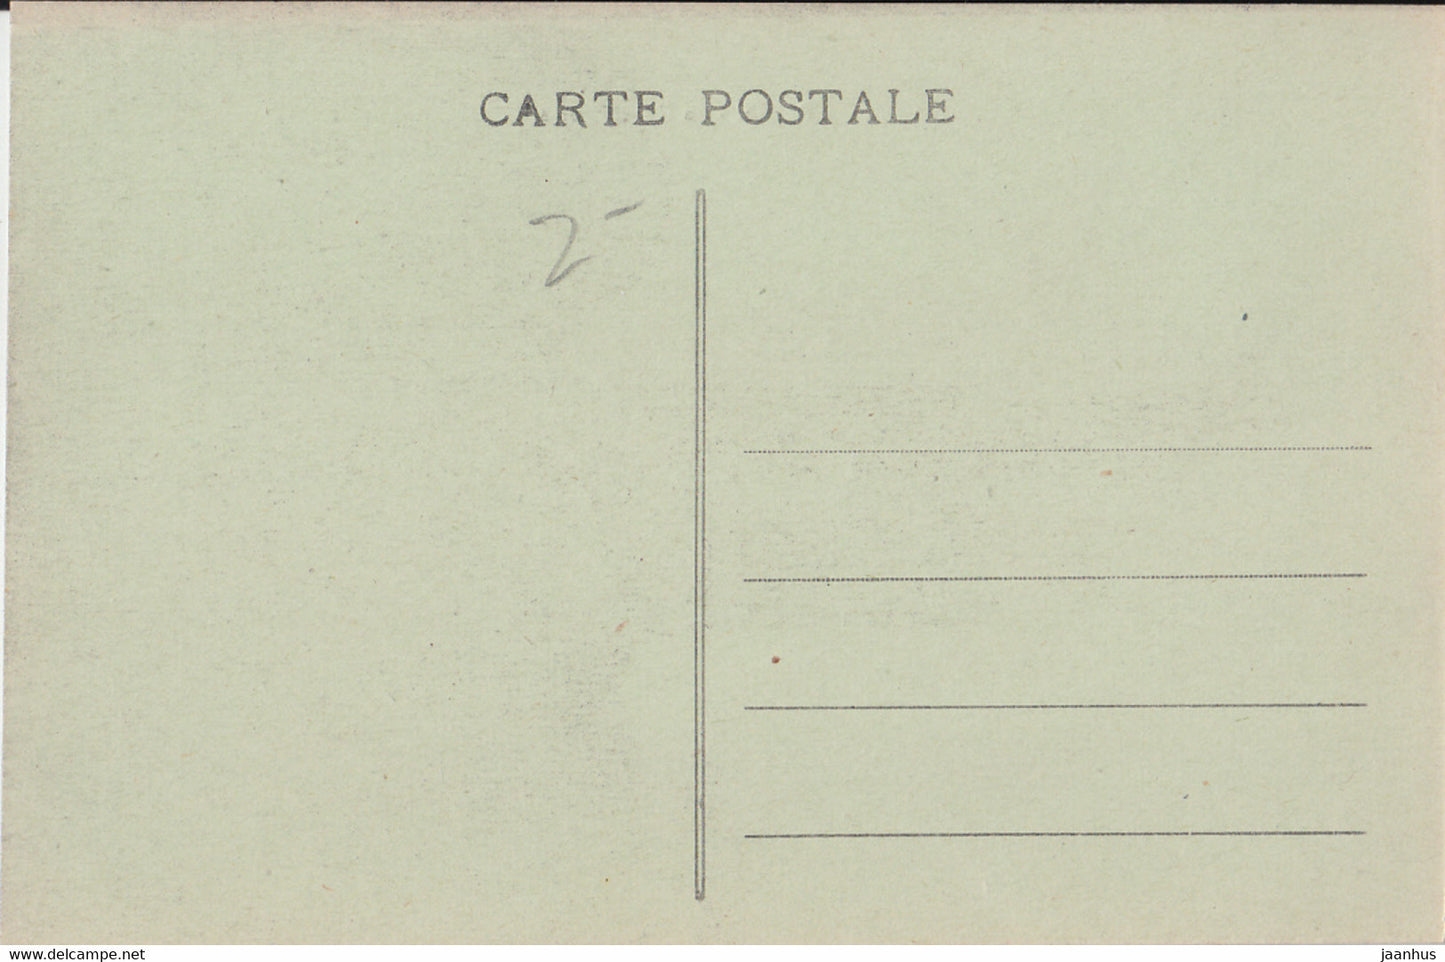 Paris - La Conciergerie - tram -old postcard - 33 - France - unused